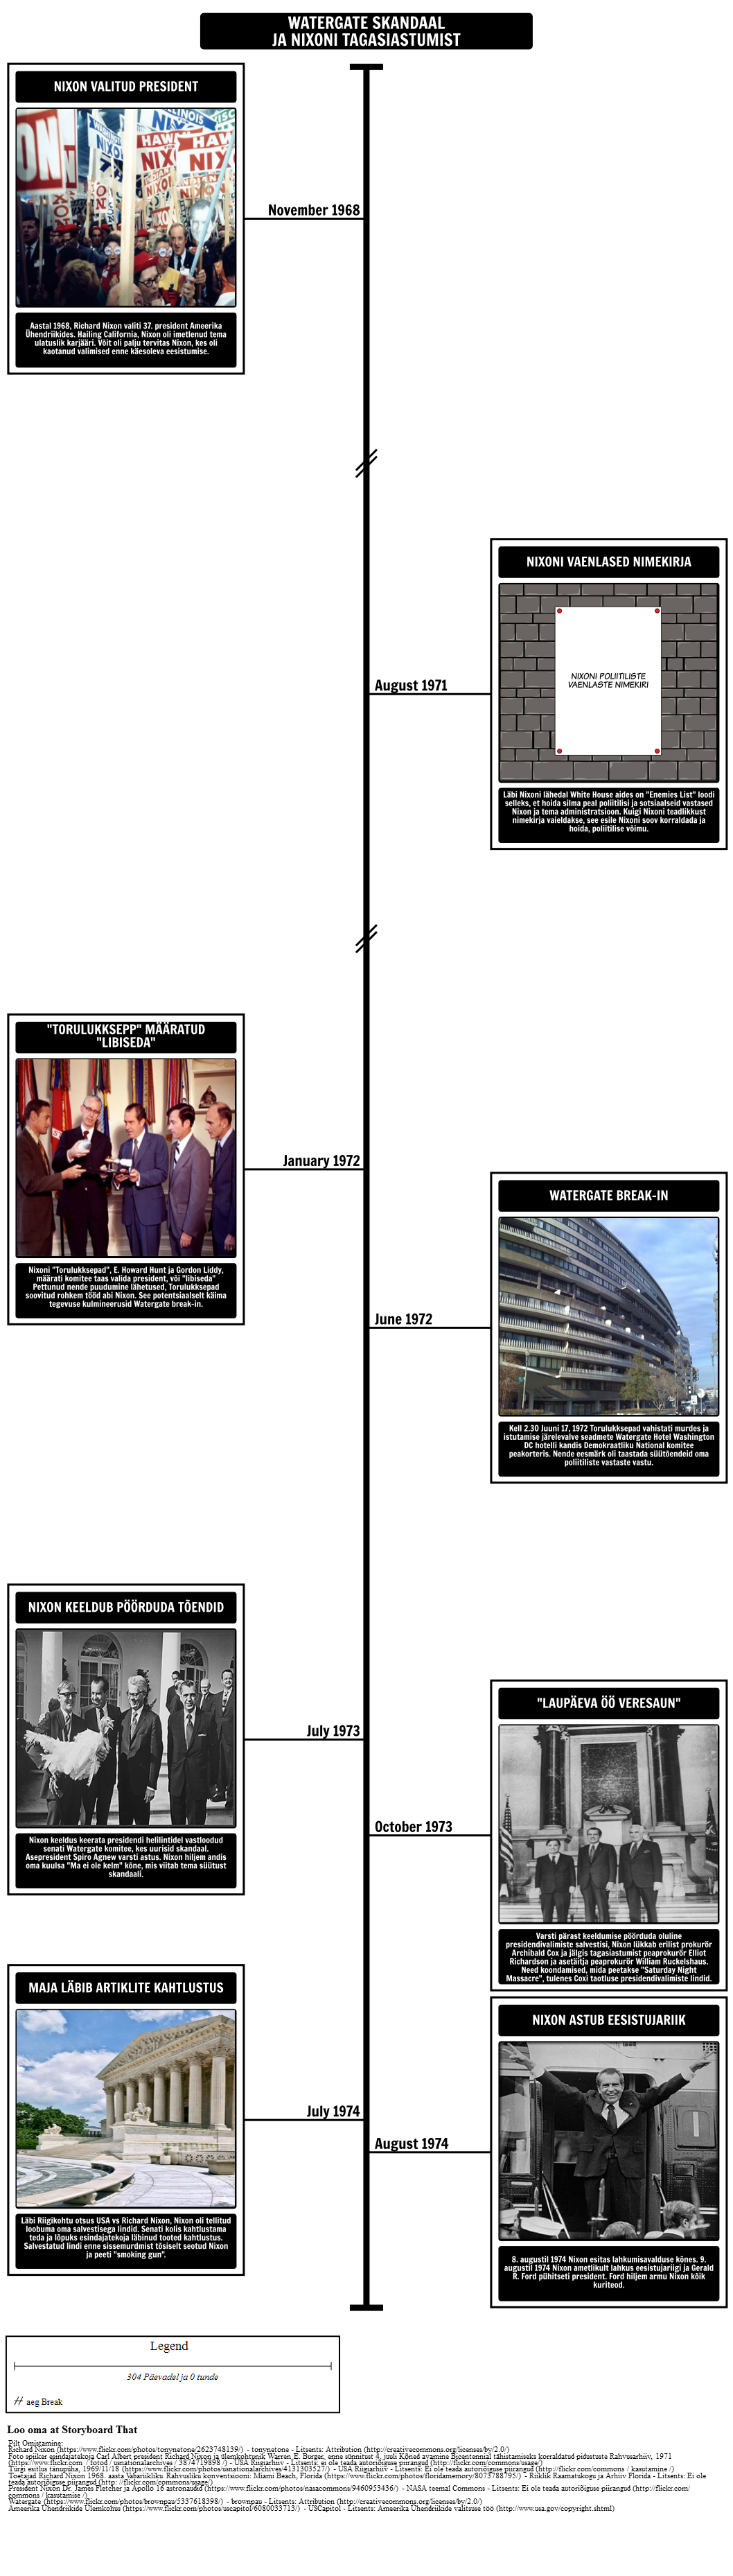 Watergate Skandaal Timeline ja Nixoni Tagasiastumine